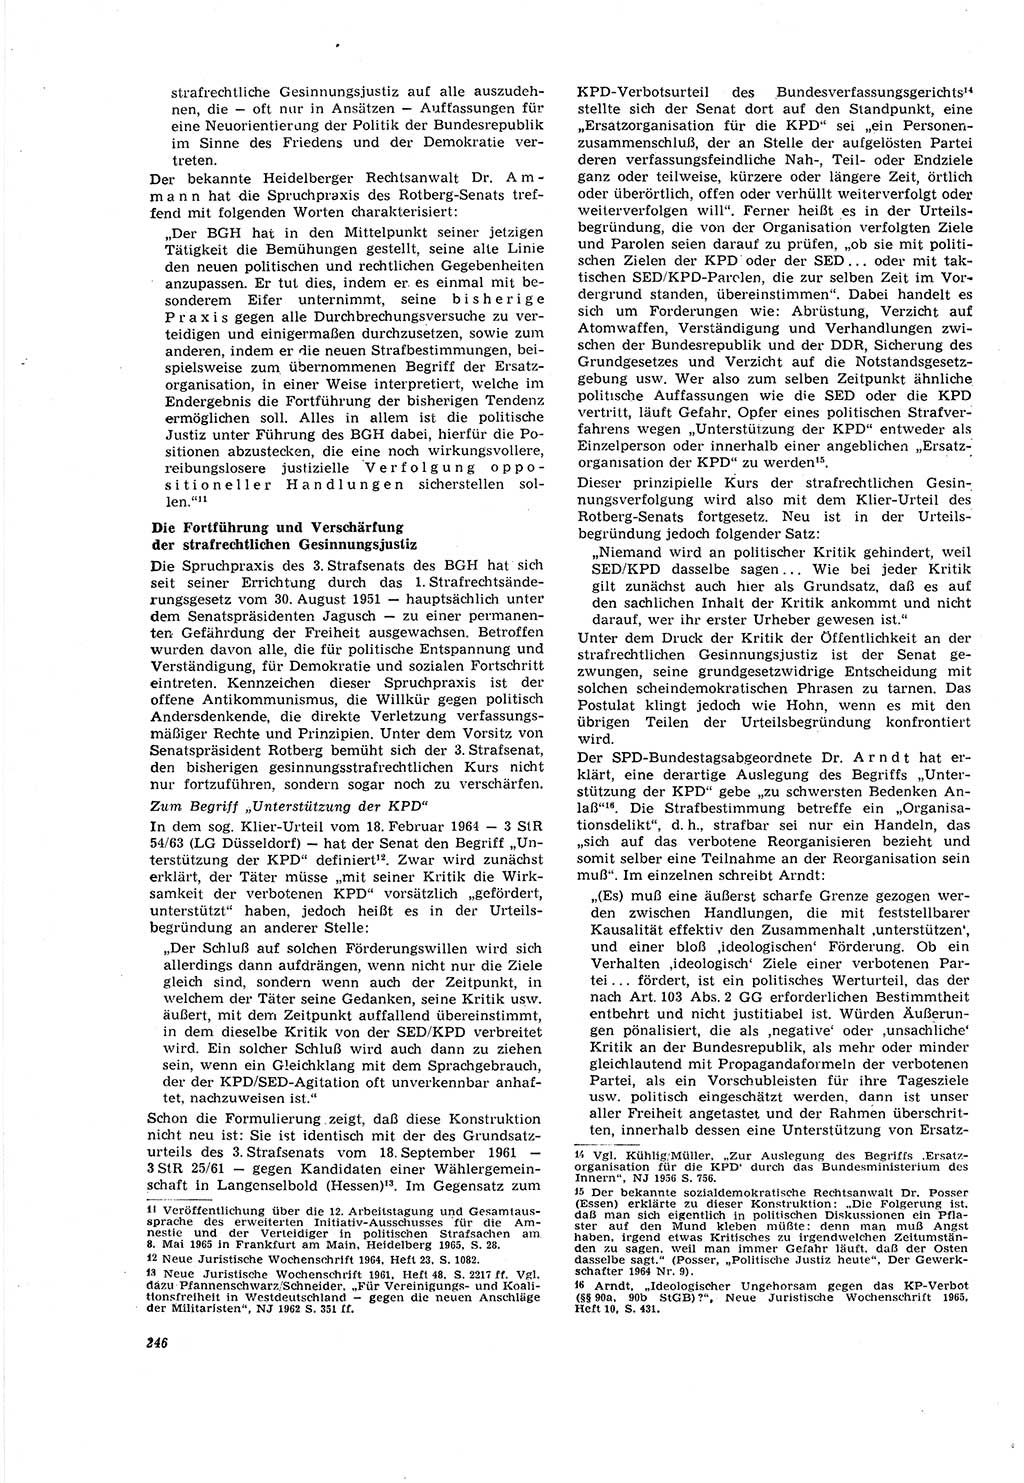 Neue Justiz (NJ), Zeitschrift für Recht und Rechtswissenschaft [Deutsche Demokratische Republik (DDR)], 20. Jahrgang 1966, Seite 246 (NJ DDR 1966, S. 246)